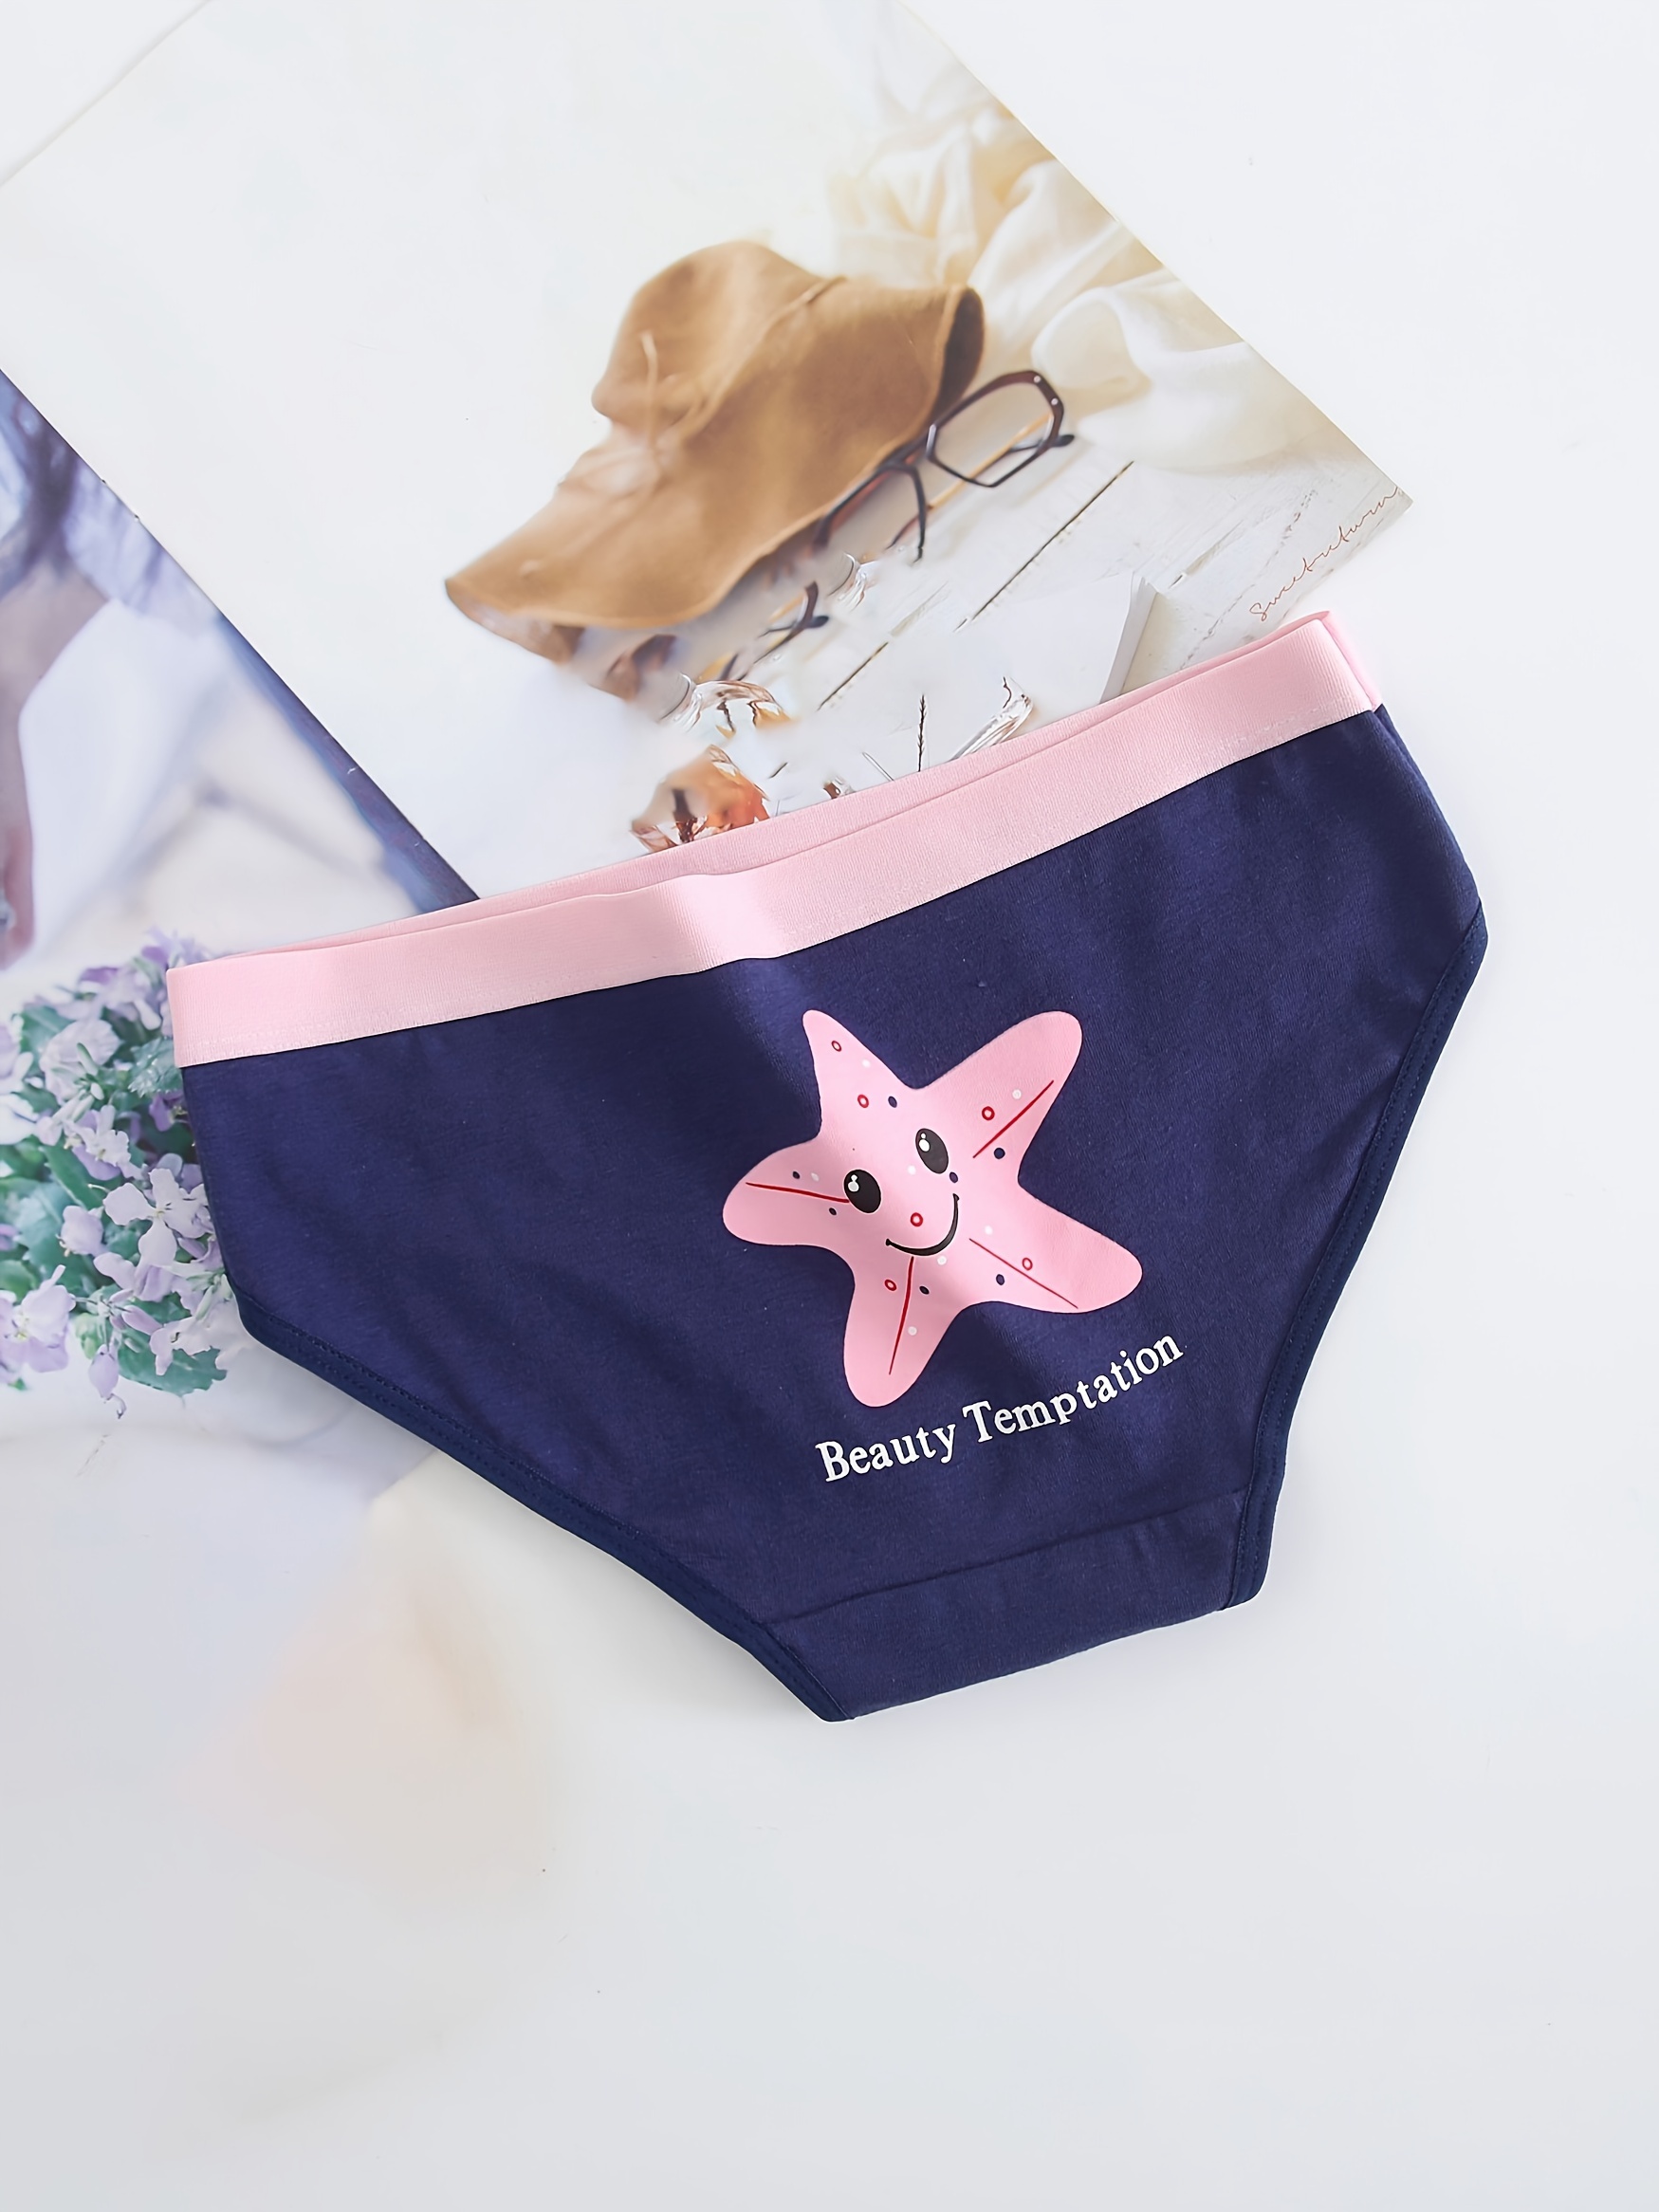 Best Deal for Sunflower Teen Girls Period Underwear Soft Cotton Underwear